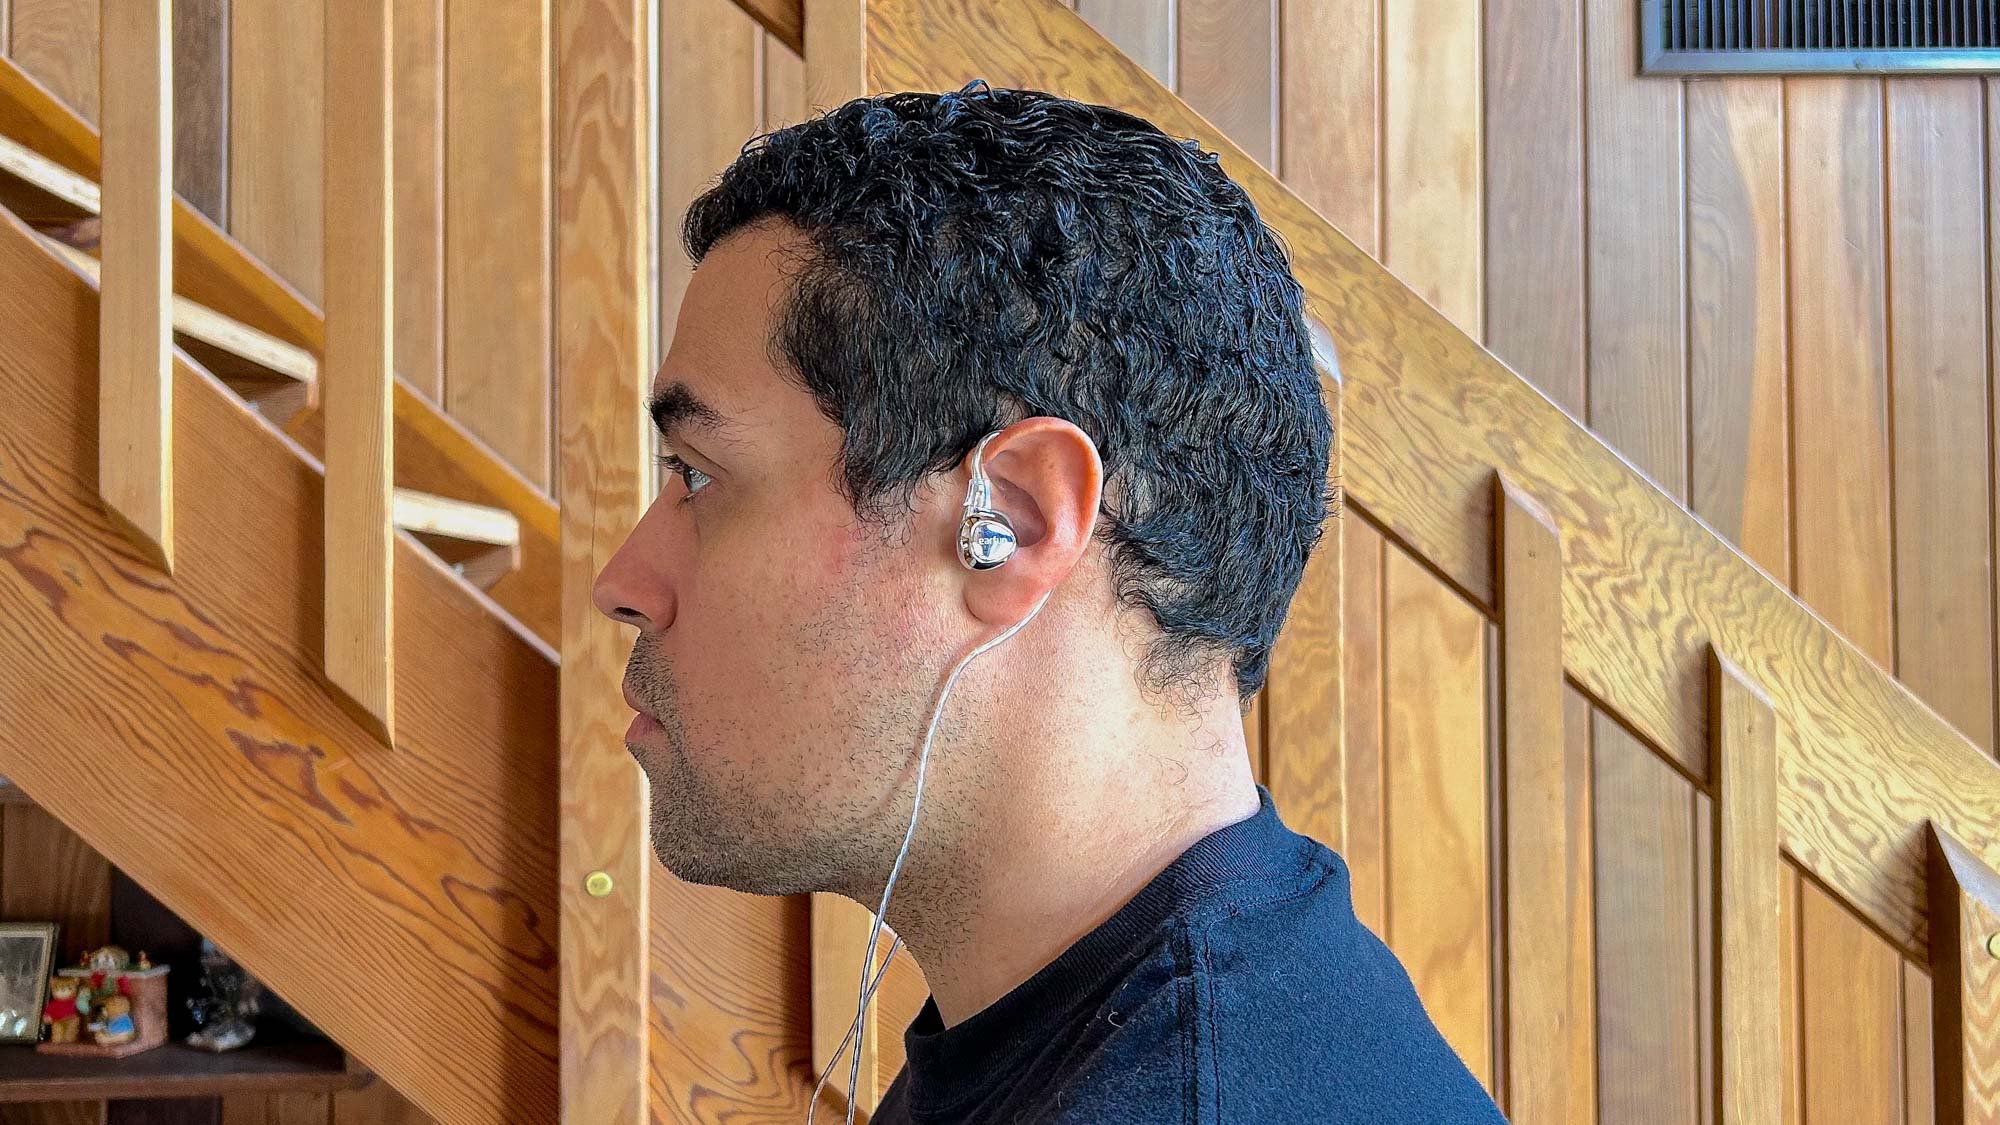 Custom fit earphones: Audio nirvana or a waste of money?